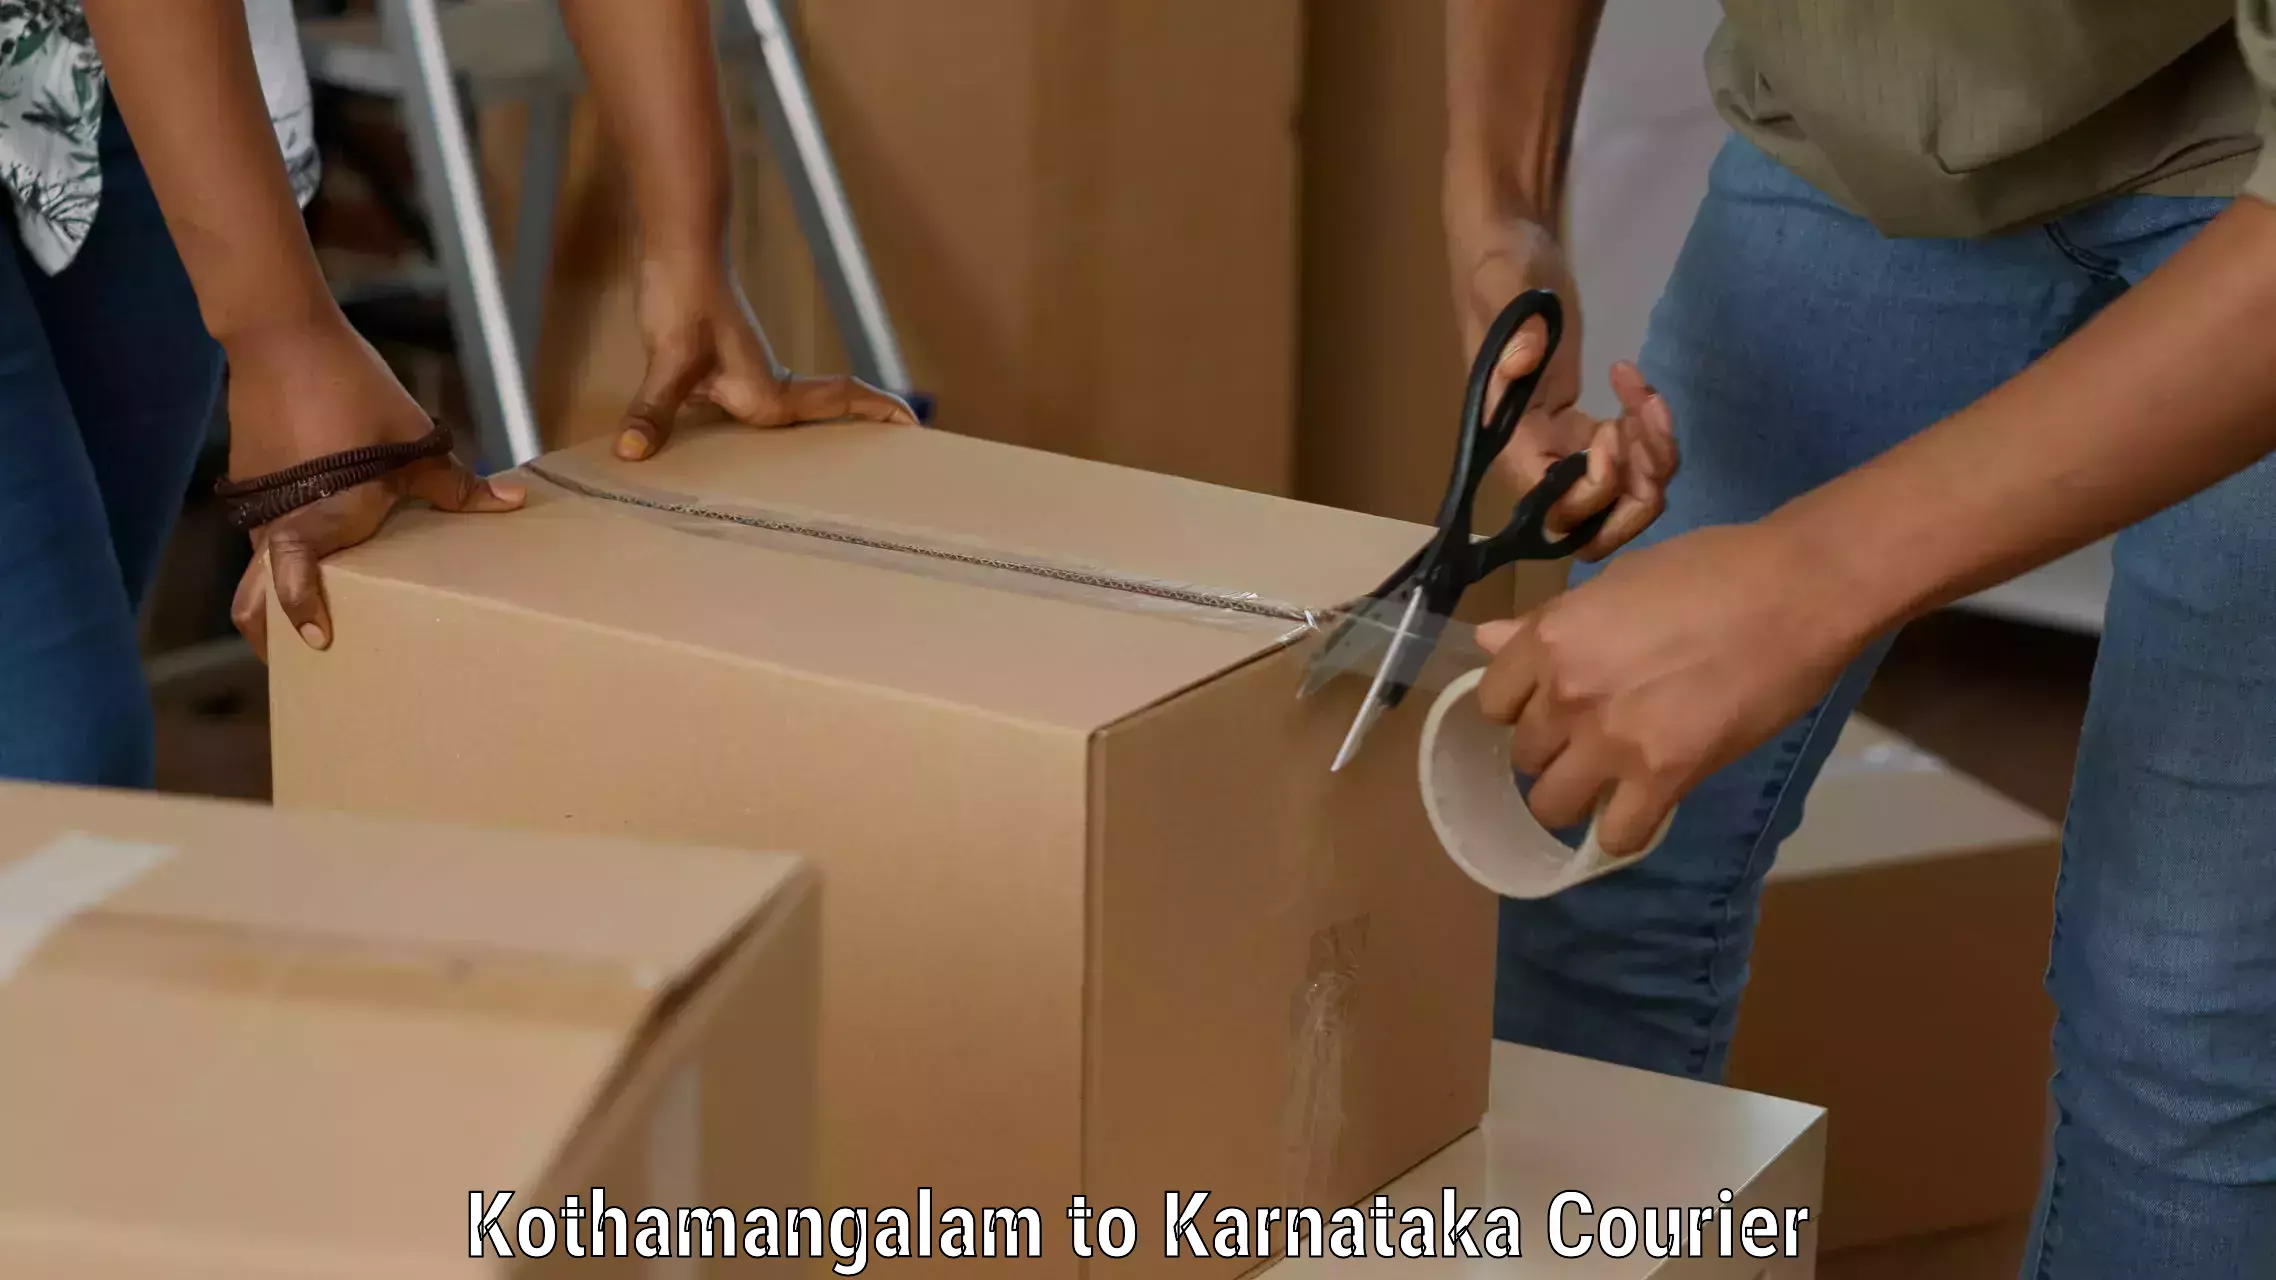 Customized delivery options Kothamangalam to Karnataka